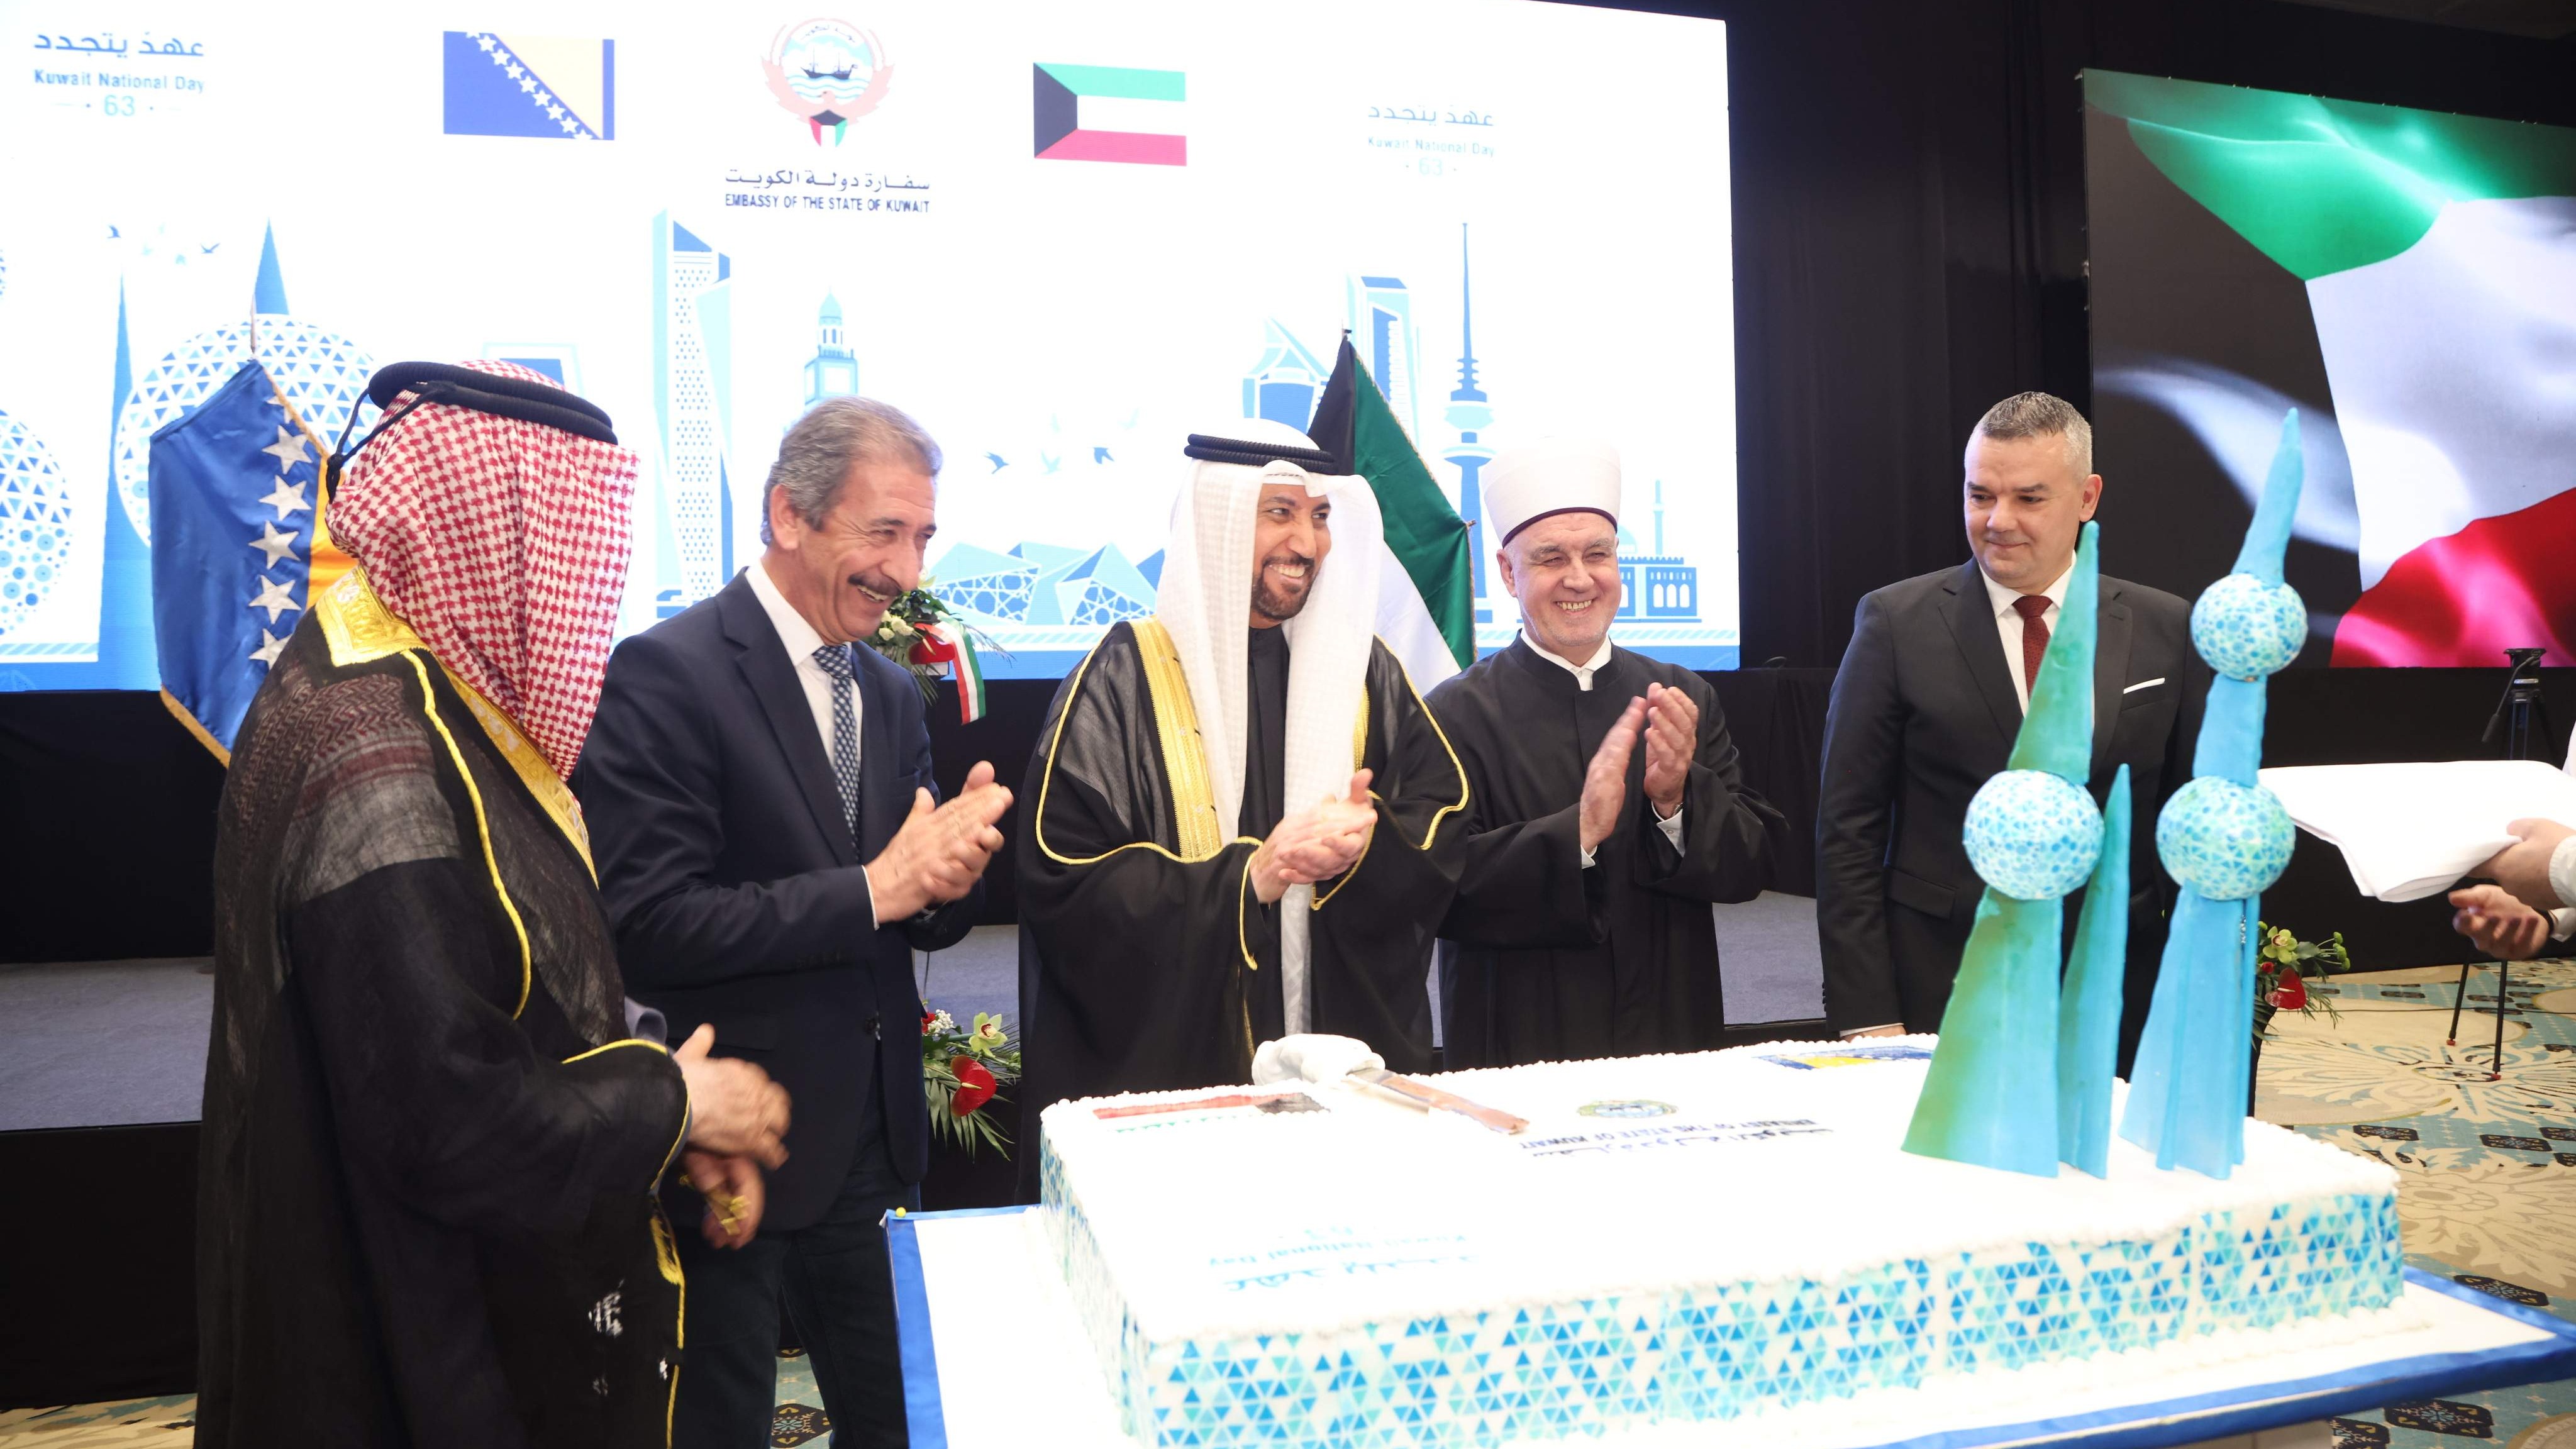 Reisul-ulema prisustvovao prijemu povodom obilježavanja Nacionalnog dana Države Kuvajt 